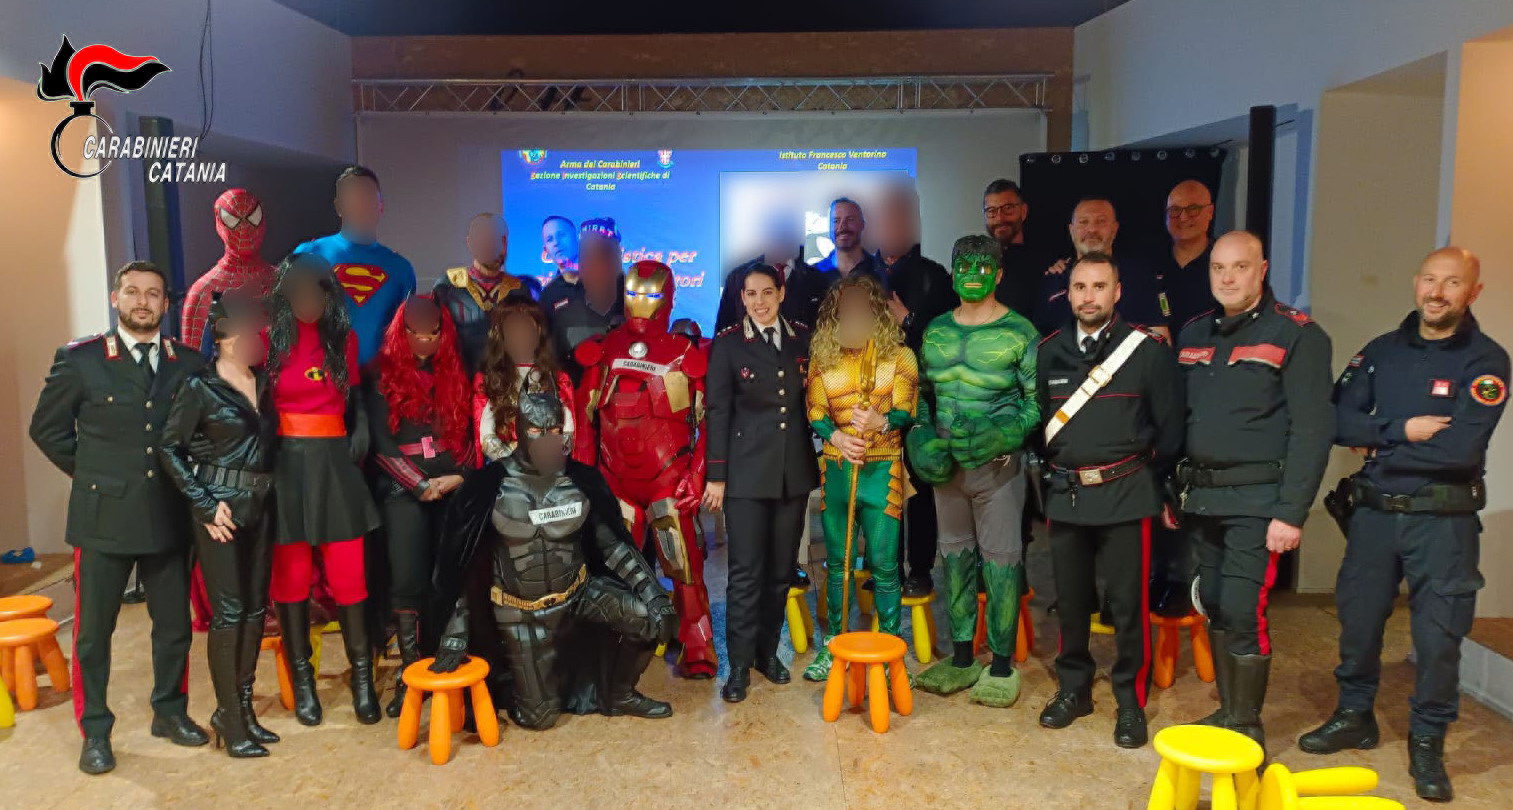 Incontro tra Carabinieri, Supereroi Marvel e bambini a Catania per diffondere il messaggio della legalità